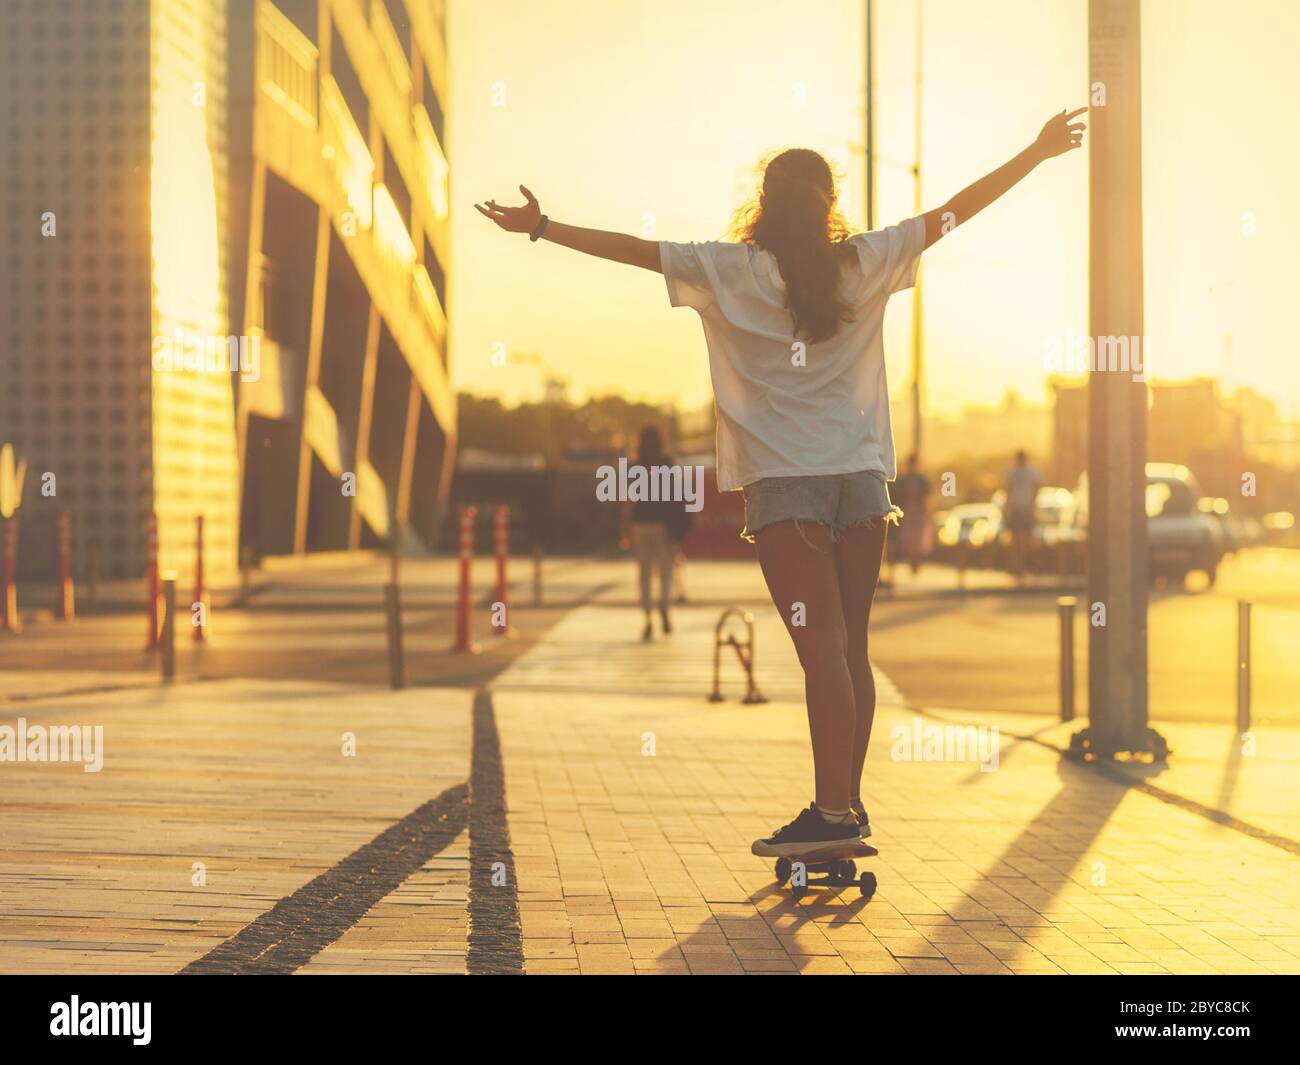 Mädchen auf einem Skateboard von den Strahlen der untergehenden Sonne beleuchtet, mit hoch erhobenen Armen, ihren Rücken zur Kamera. Selektiver Fokus. Stockfoto